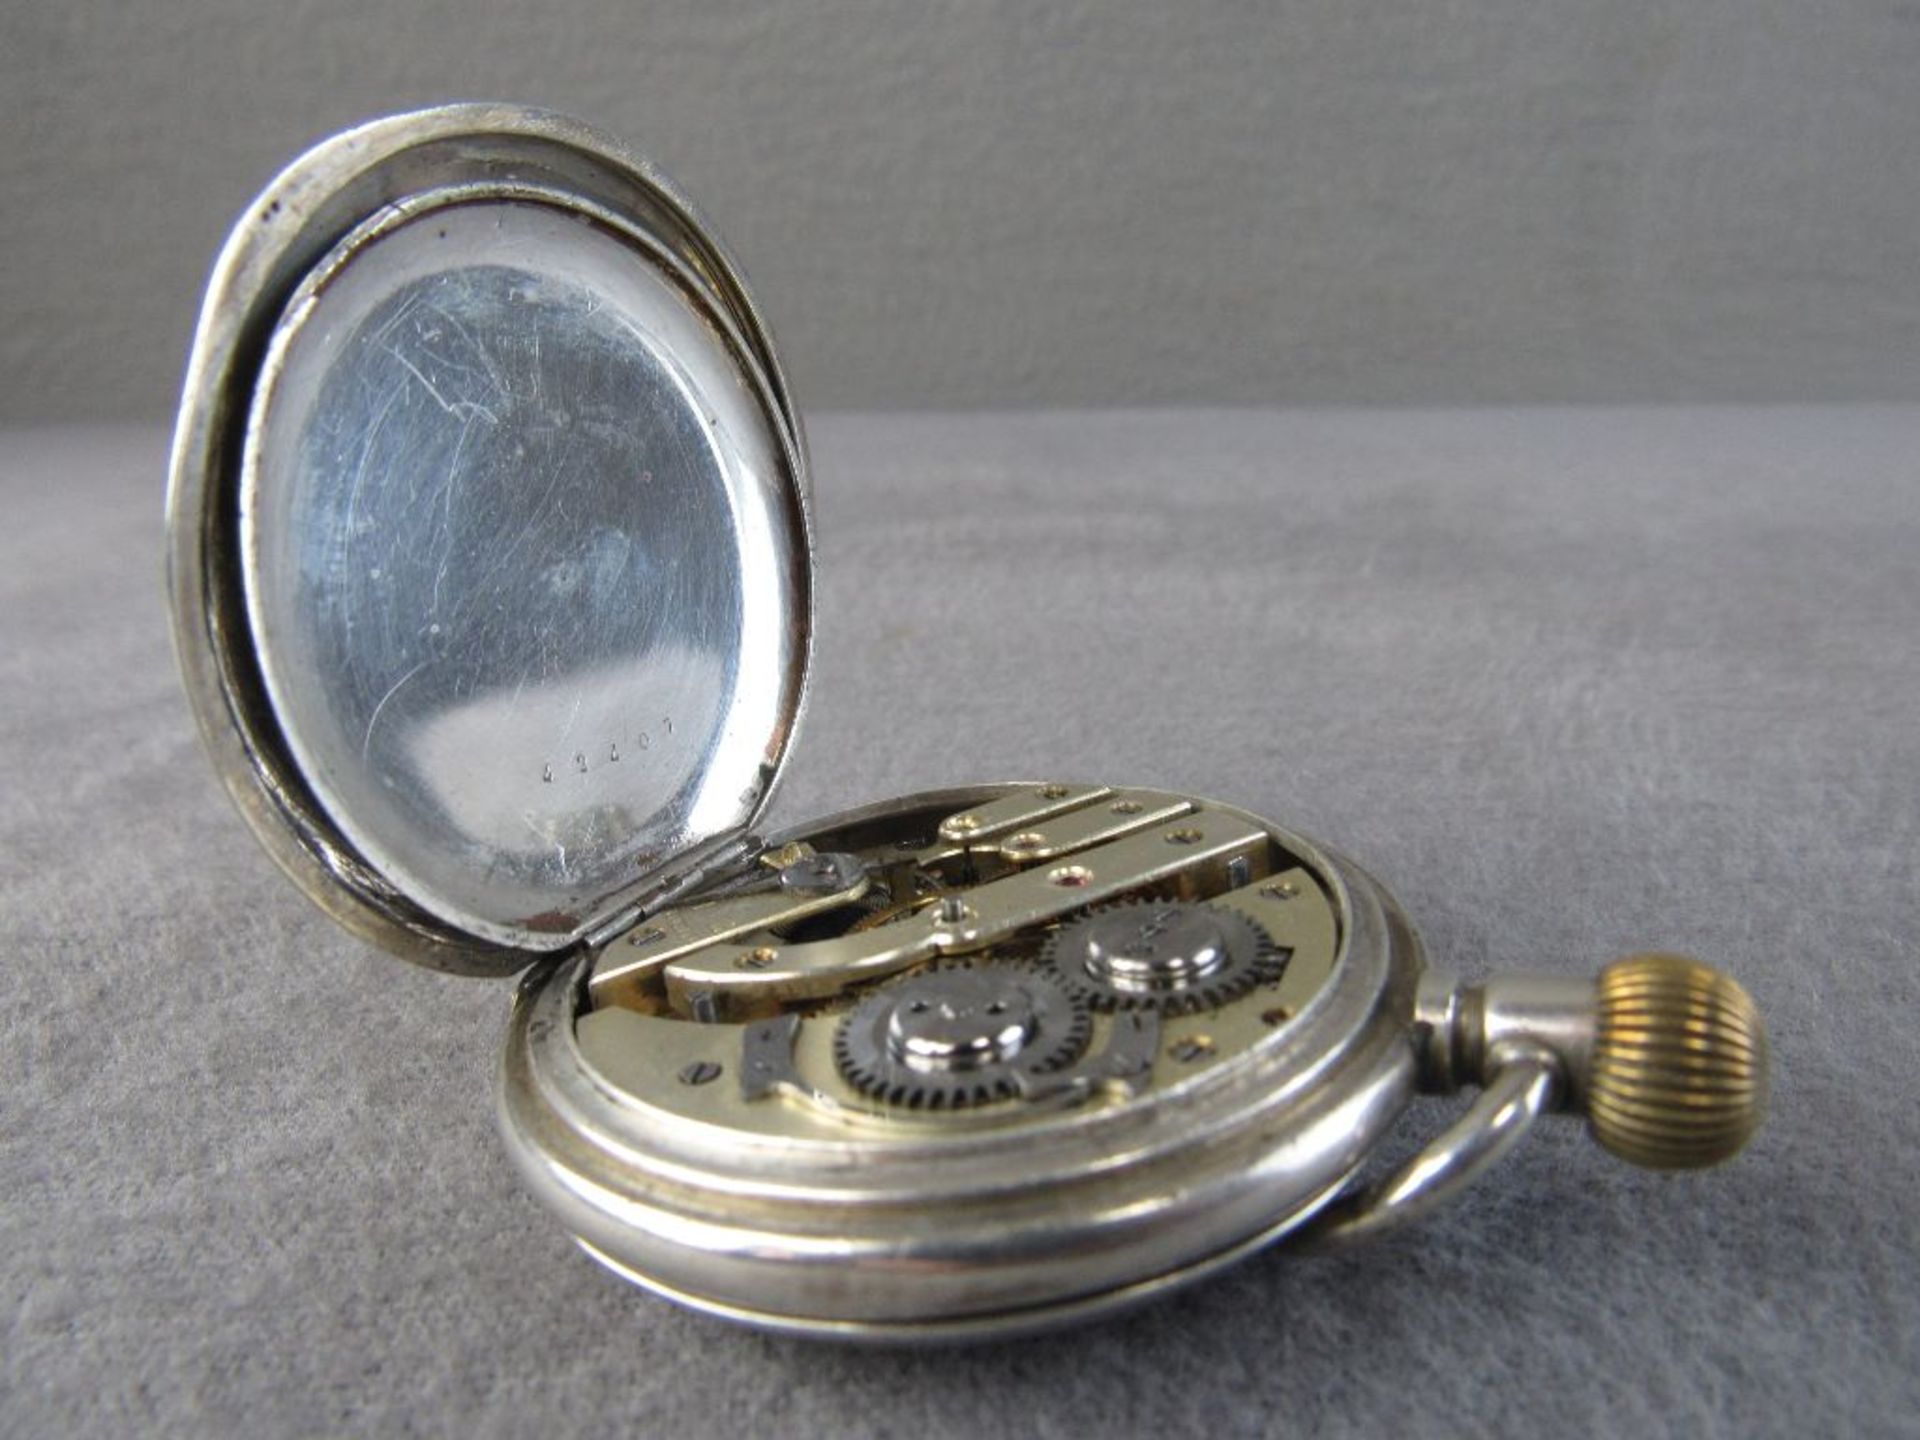 Französische Herrentaschenuhr drei Deckel läuft an Durchmesser 5cm - Image 6 of 6